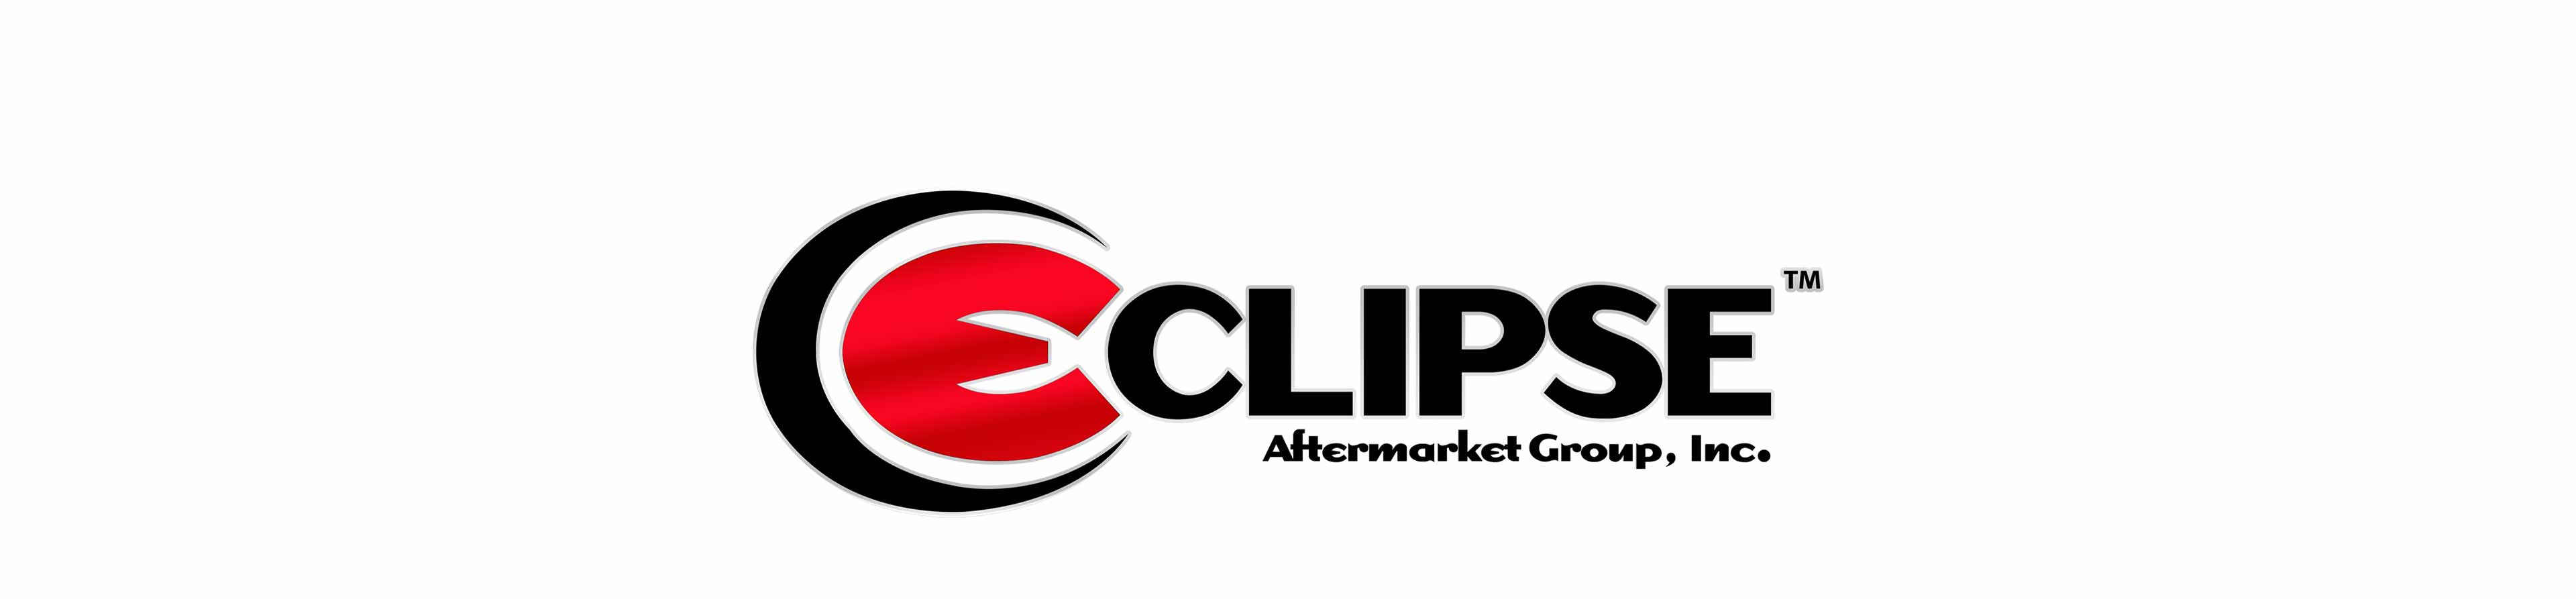 Eclipse dealer connection logo